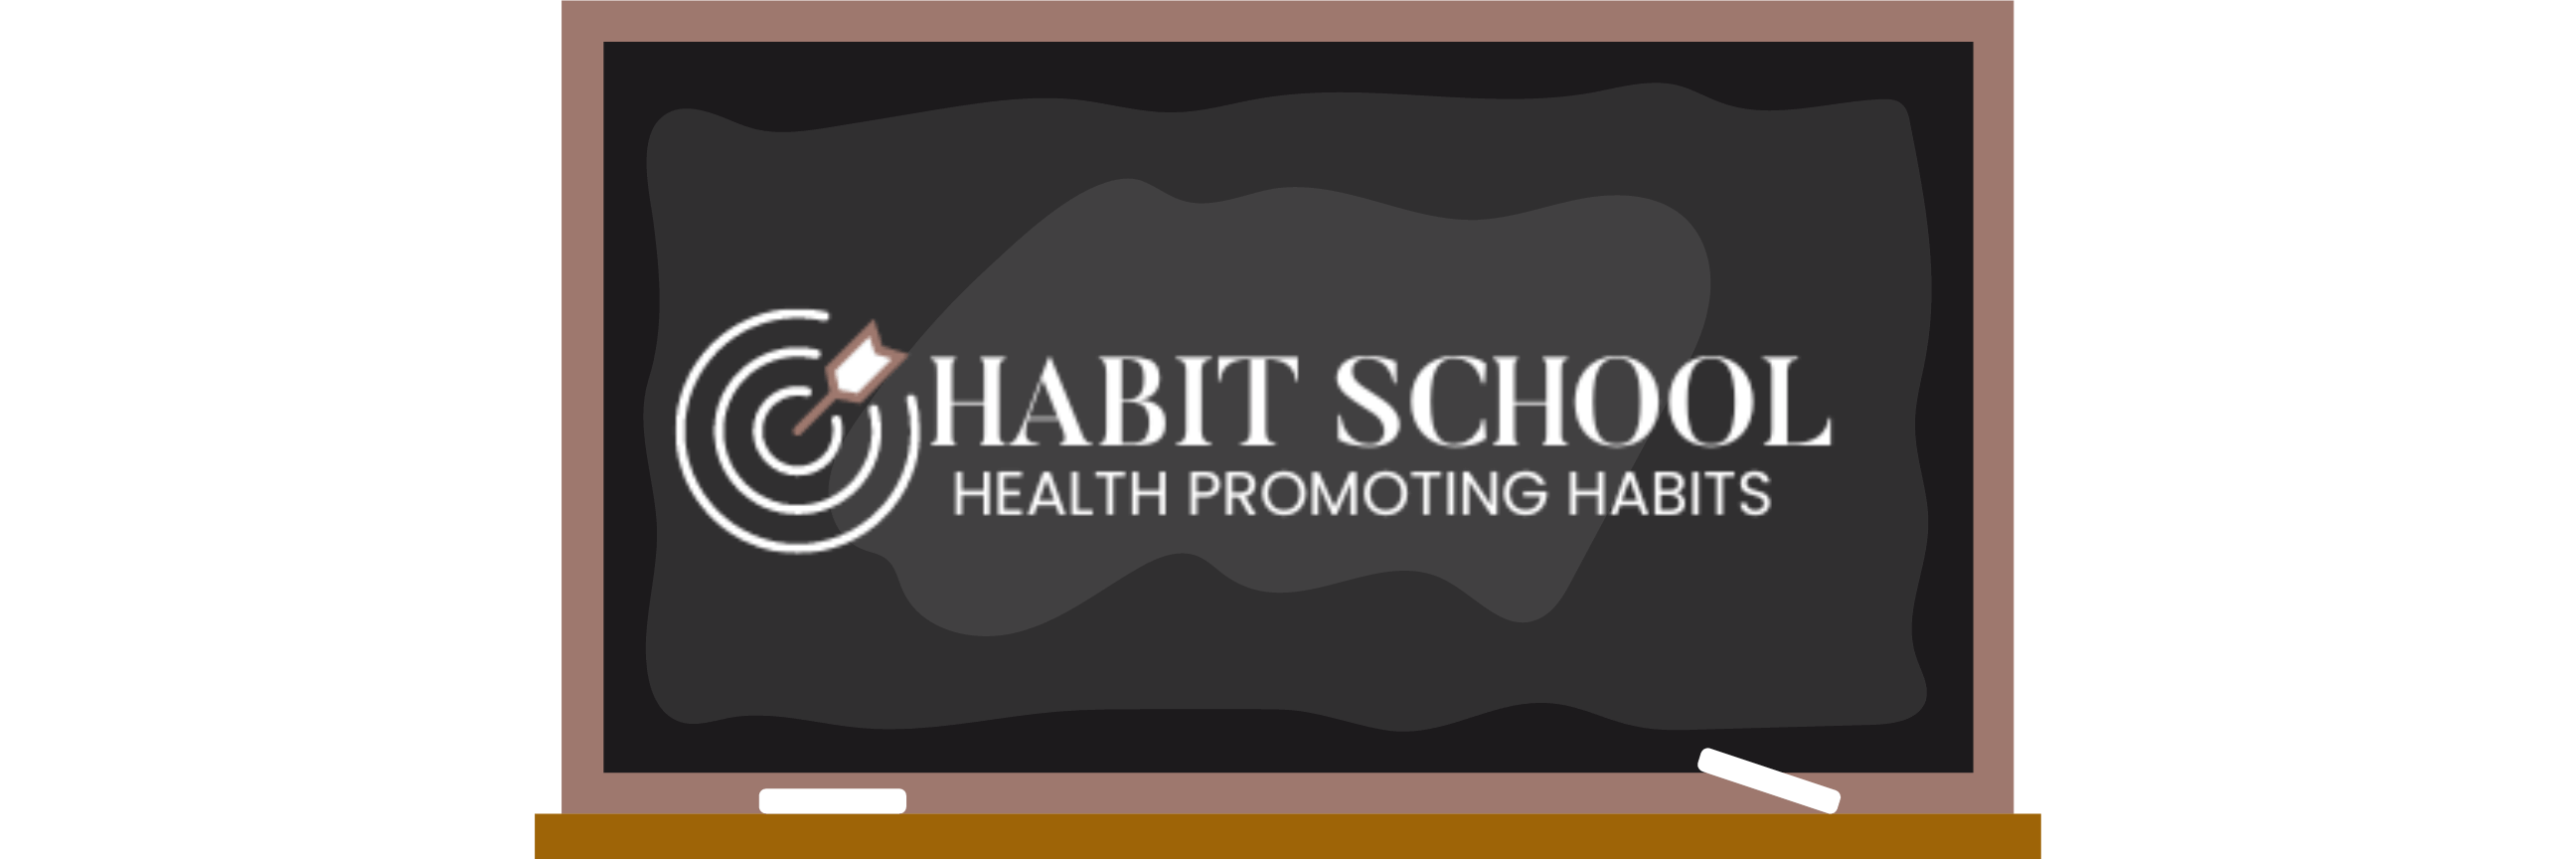 Habit School - Undiet Your Life Program 